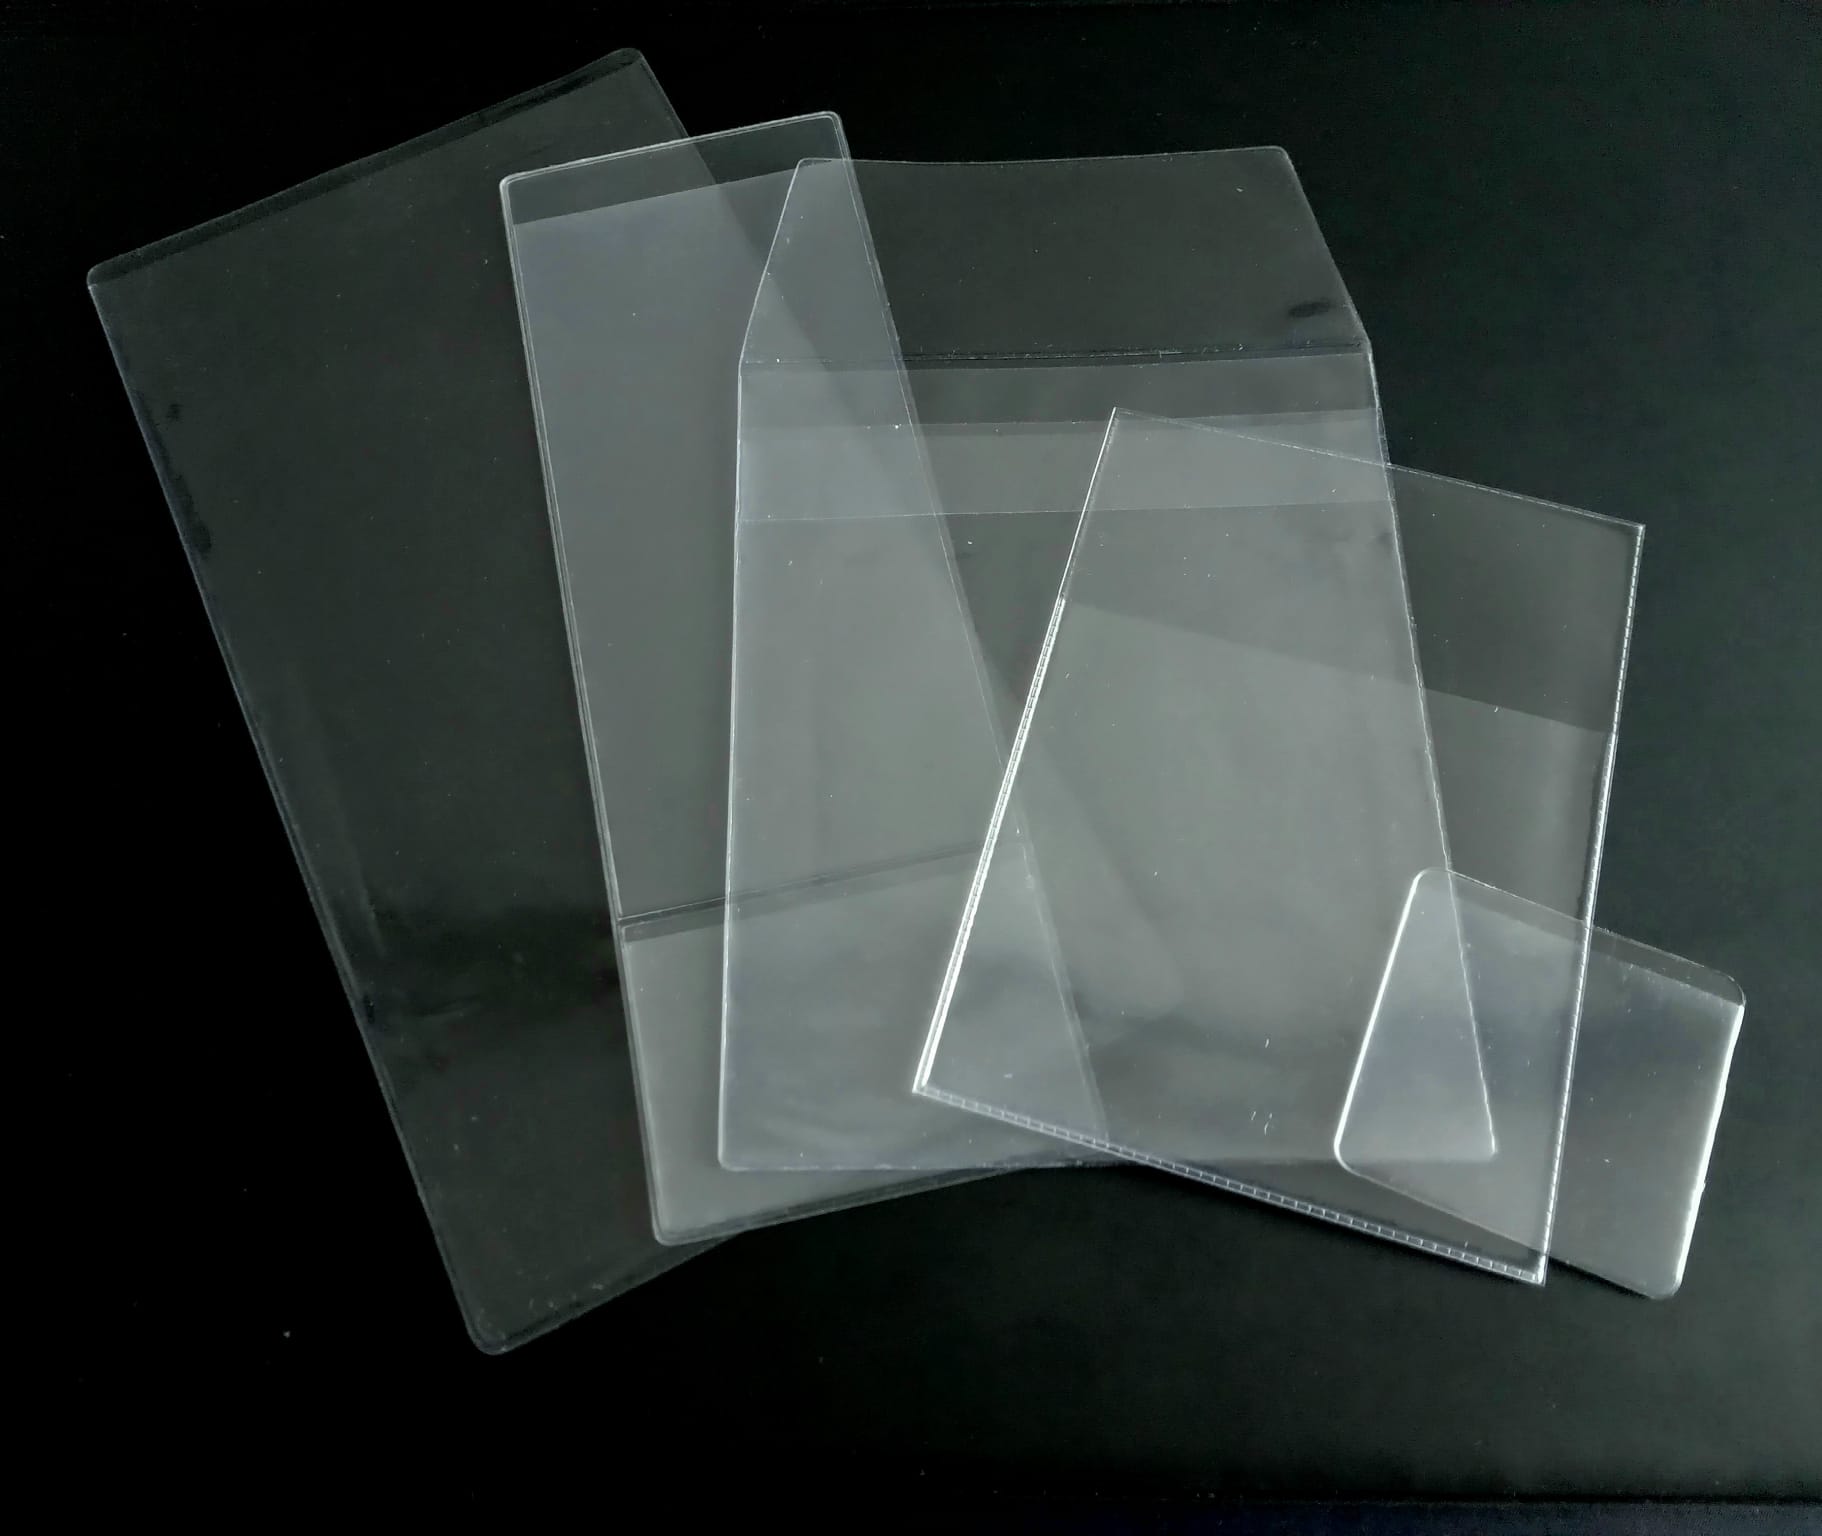 Pochettes Porte Documents: Pochette Plastique Transparente - Zeta Srl